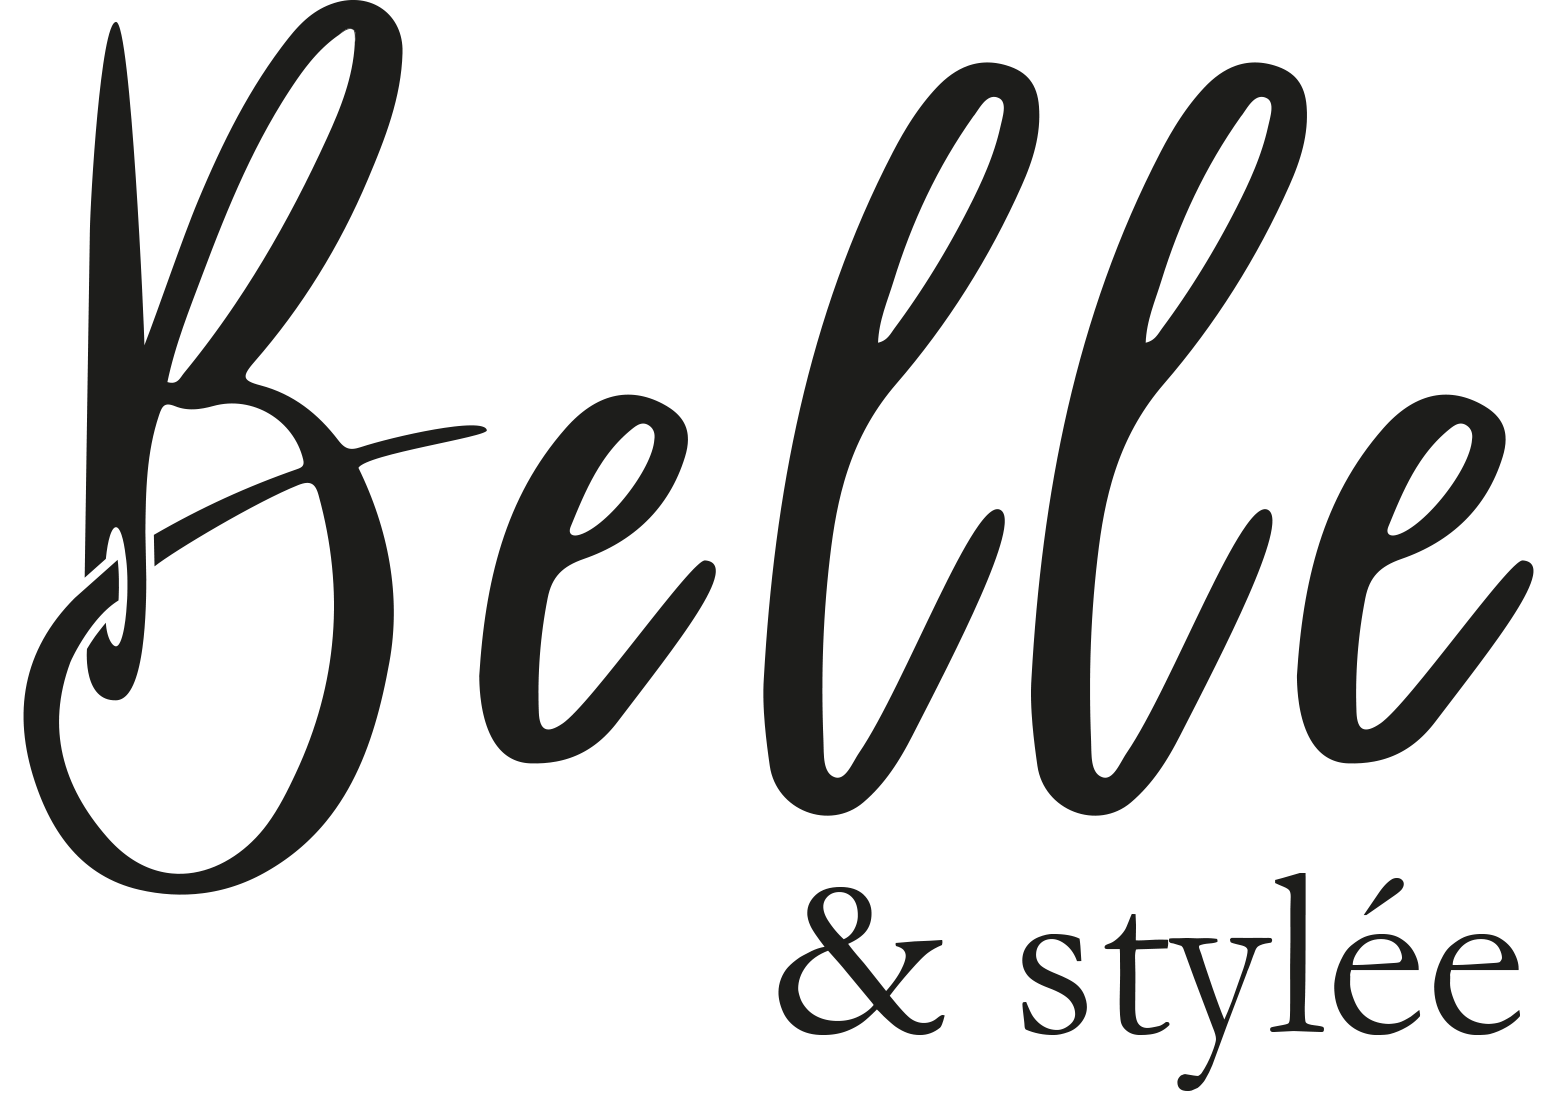 Belle & Stylée